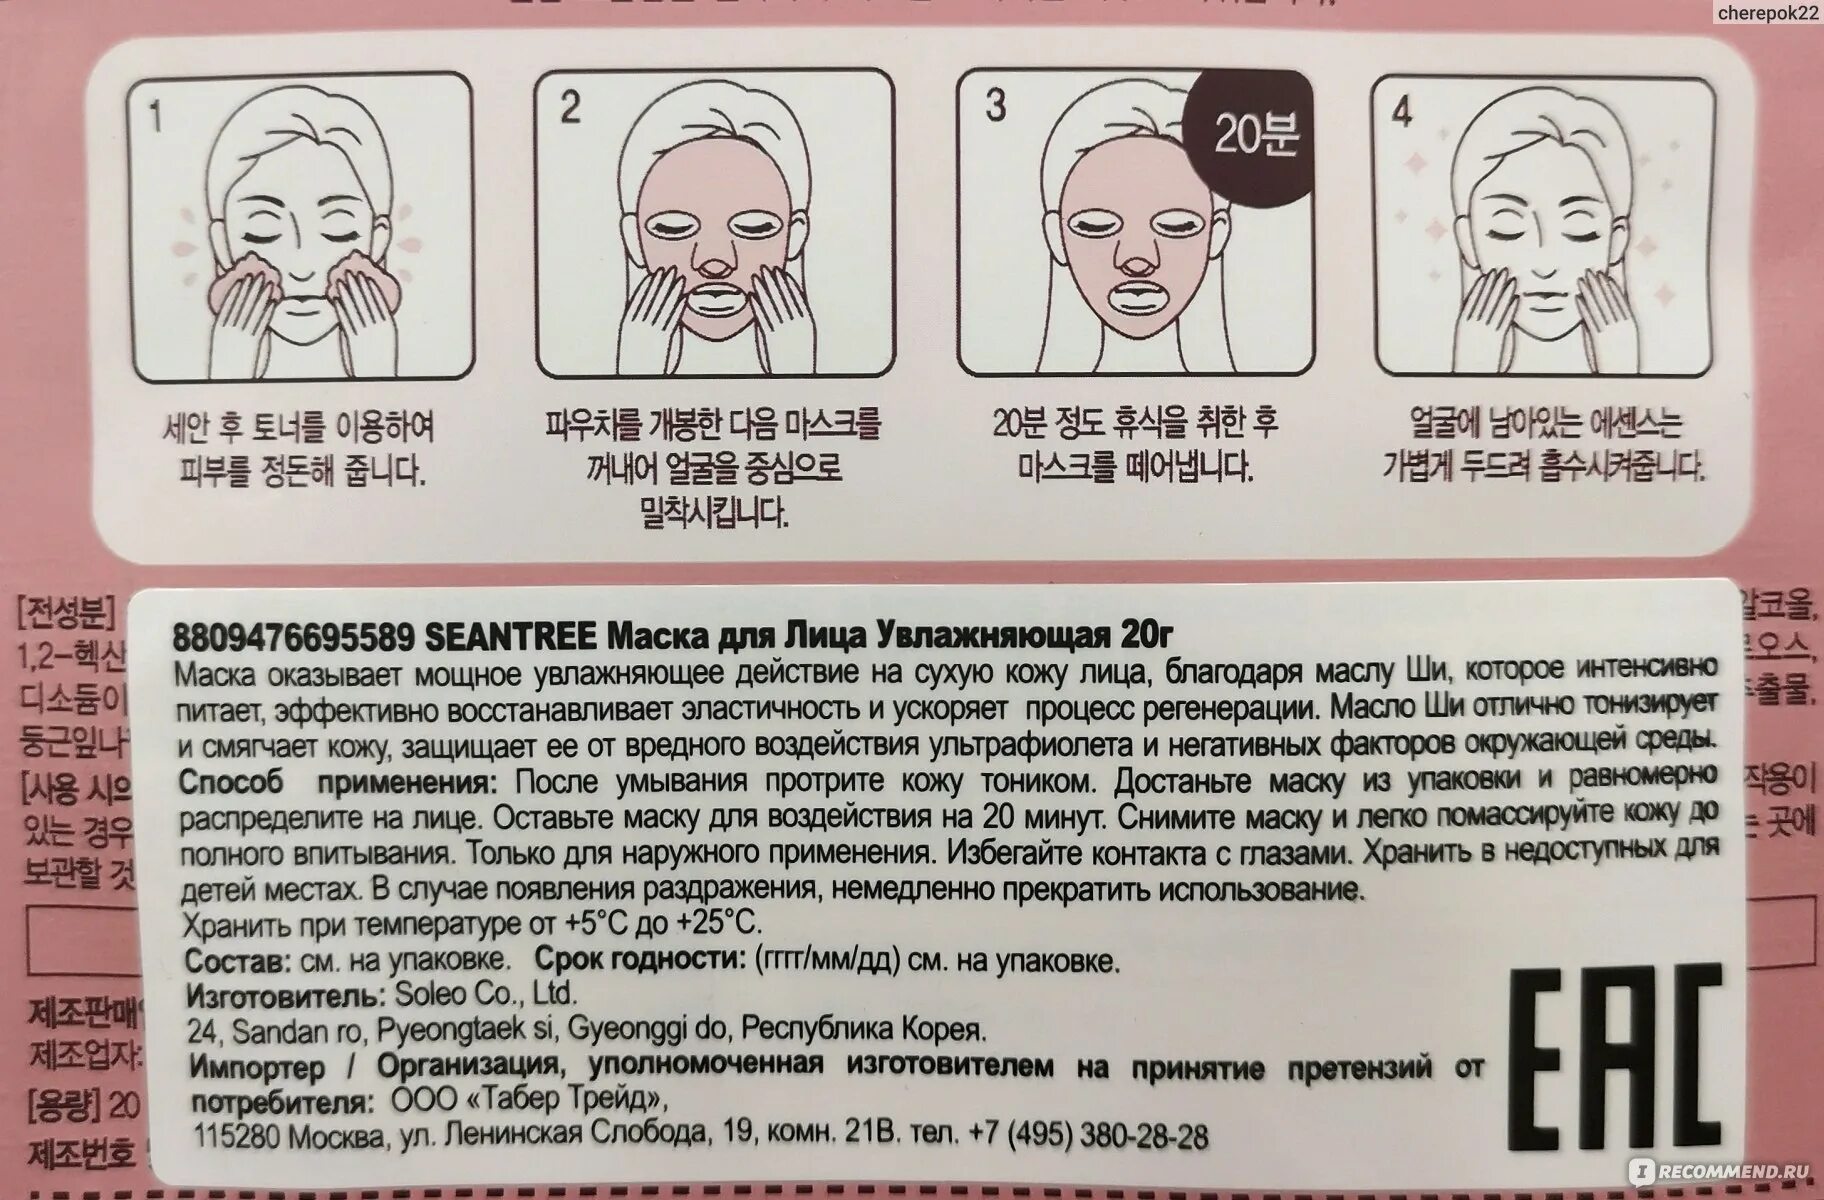 Как использовать корейскую маску. Маски для лица тканевые инструкция. Корейская маска для воздействия. Тканевая маска для лица как пользоваться. Тканевая маска для лица как пользоваться правильно корейская.